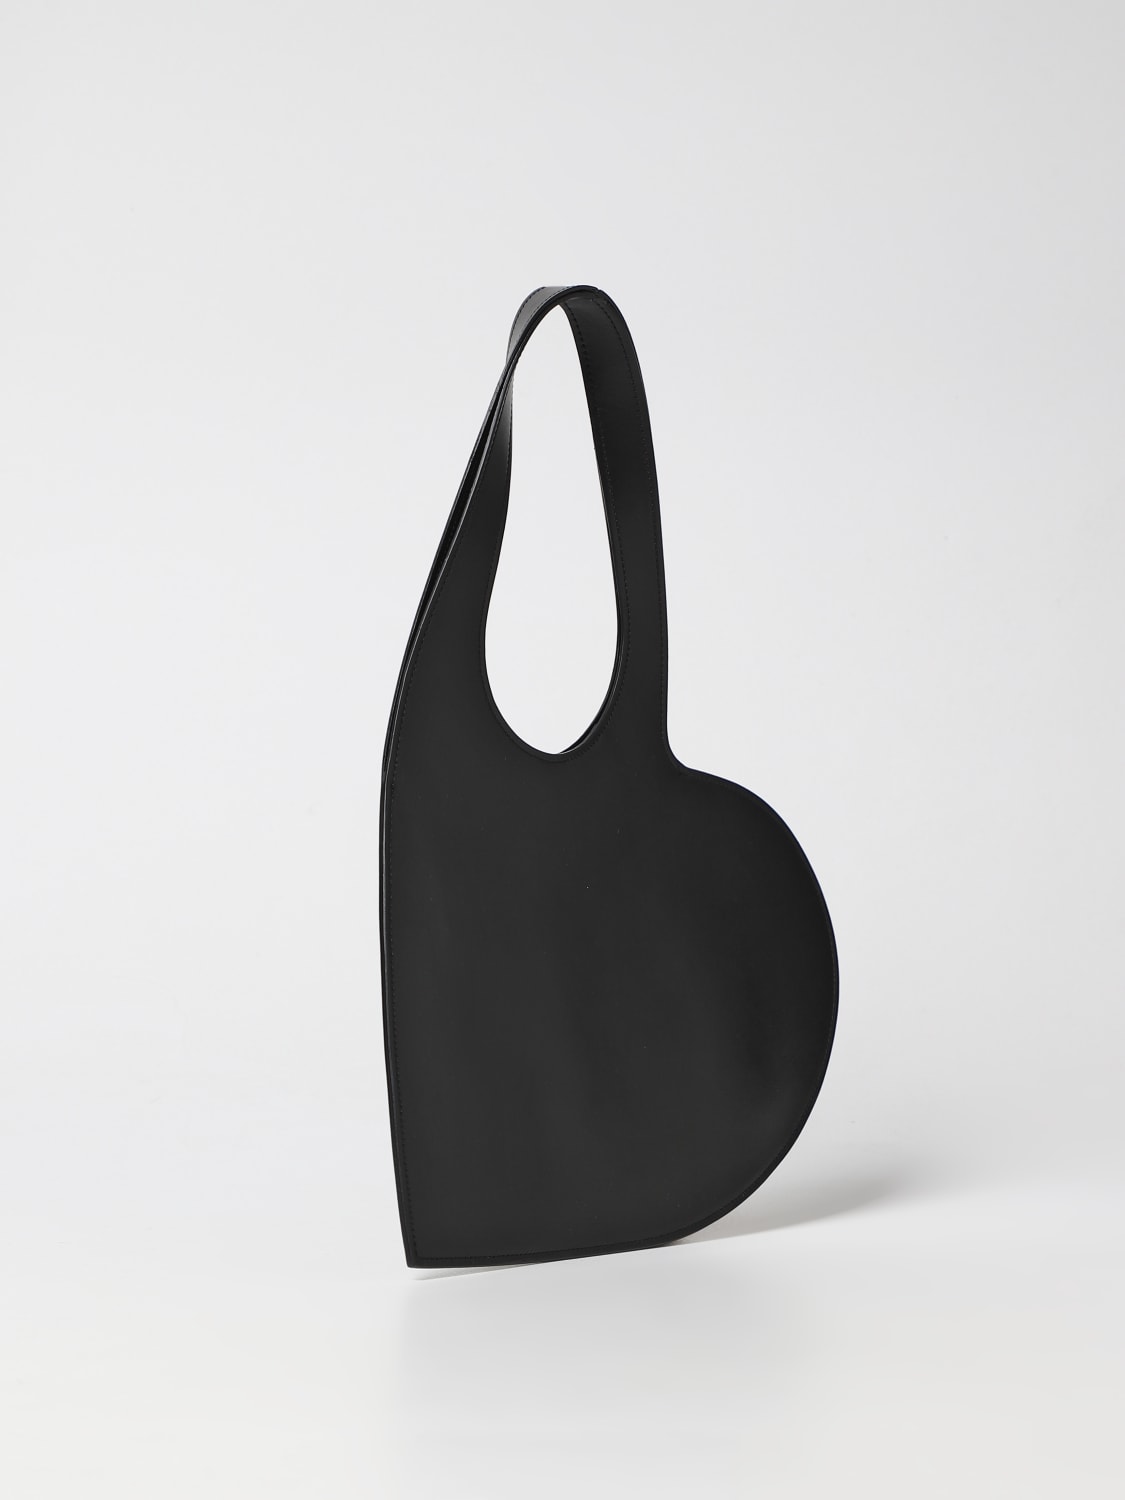 Leather Shoulder Bag in Black - Coperni